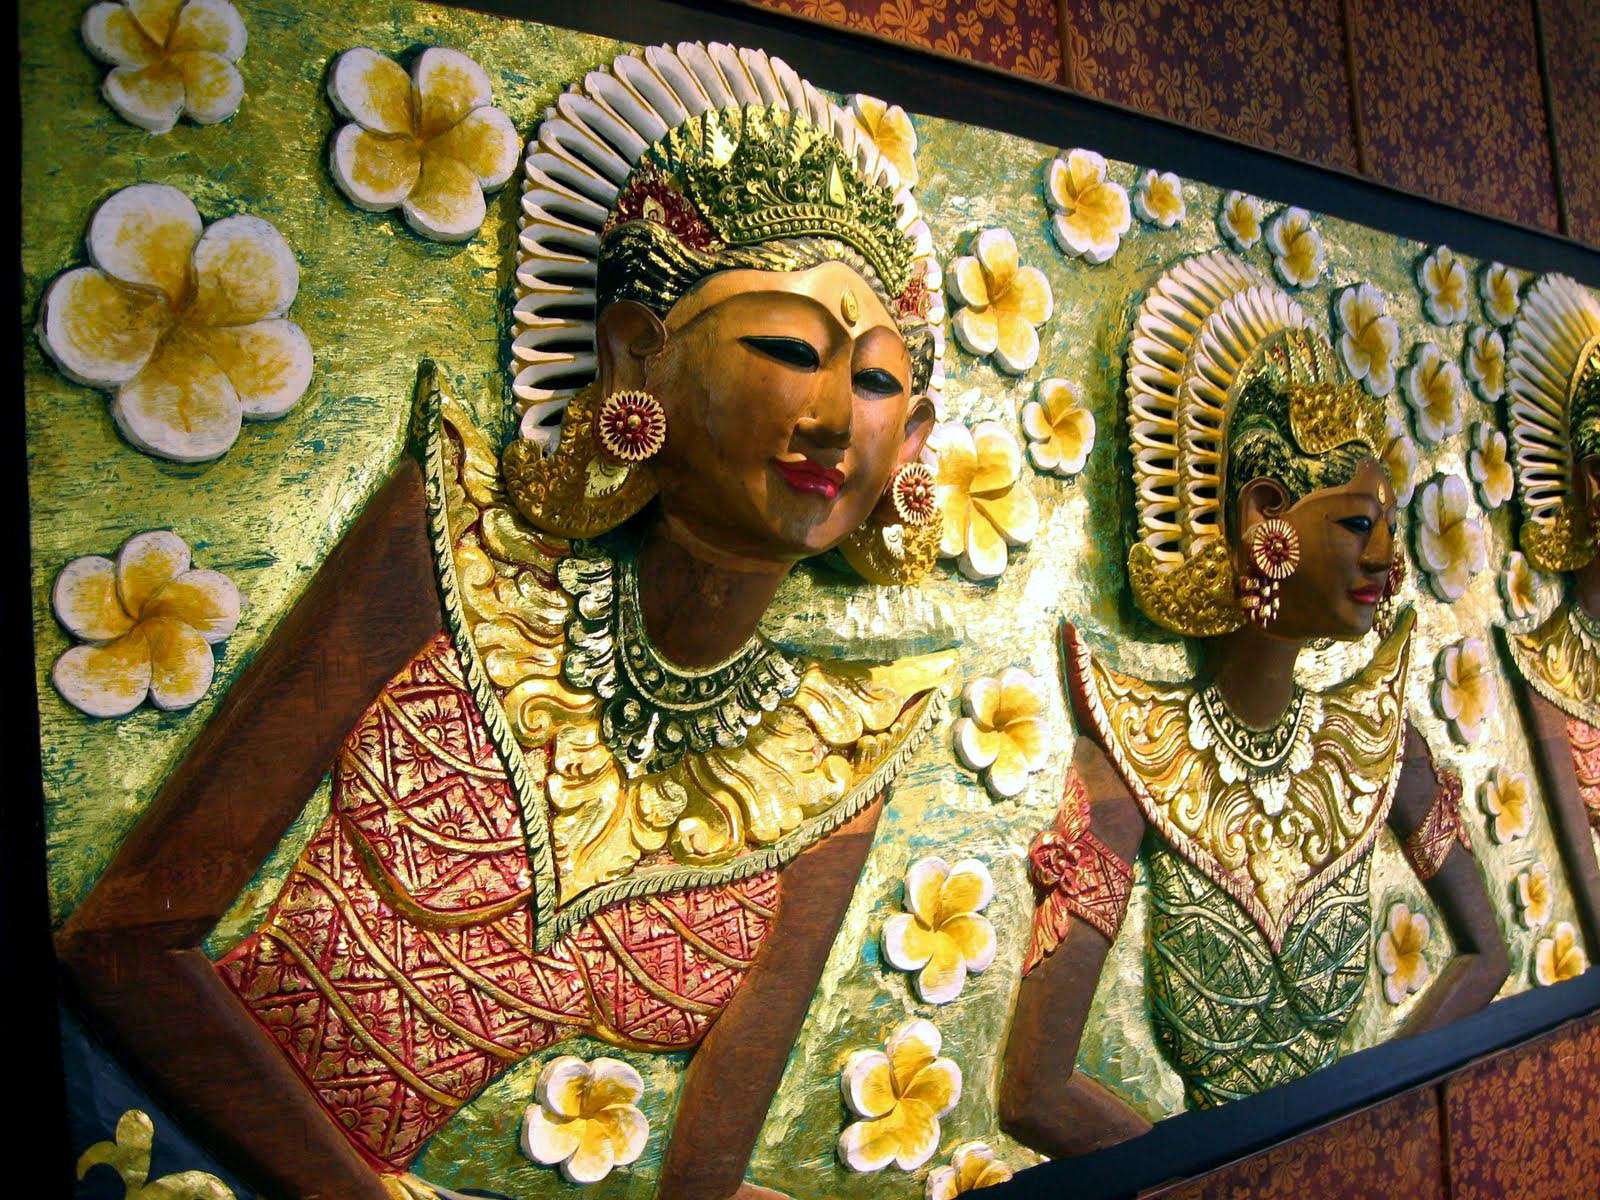 Bali Arts and Crafts